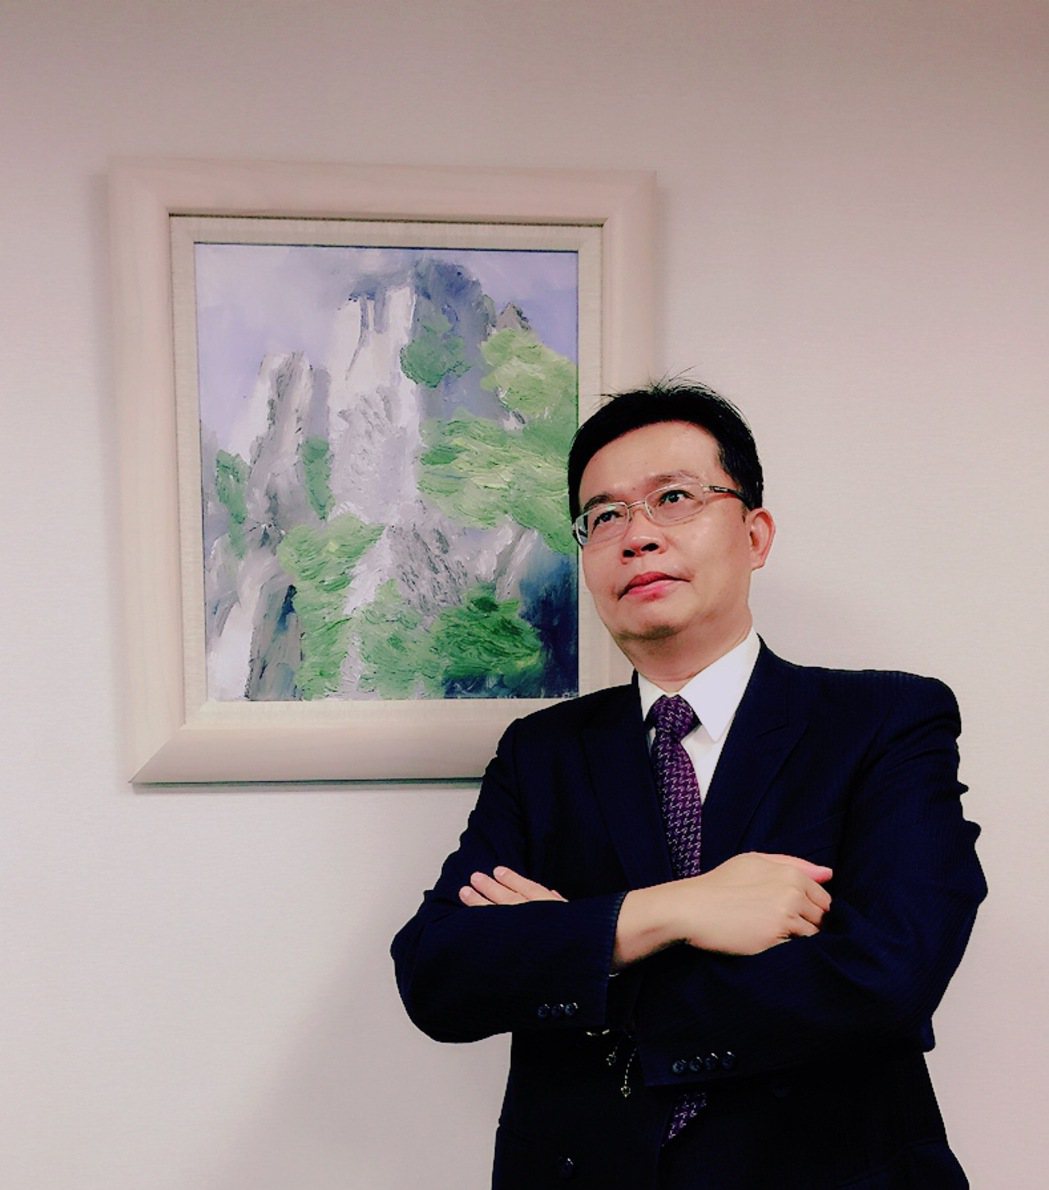 本文作者:國立台灣科技大學兼任副教授羅天一博士。